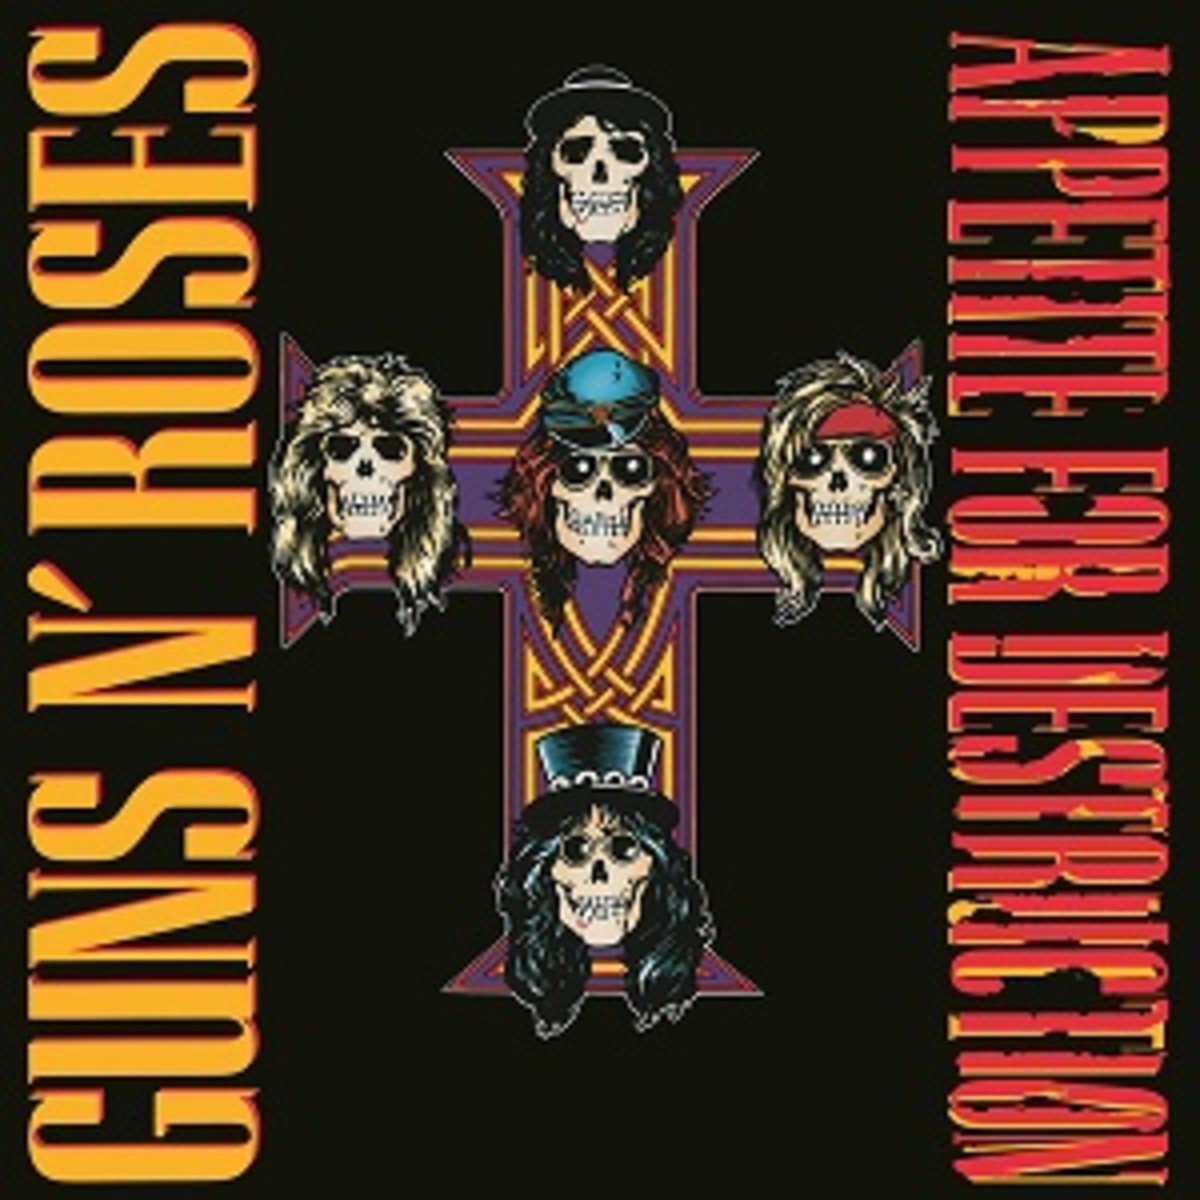 Guns N' Roses, Badboys of Rock in the 90's